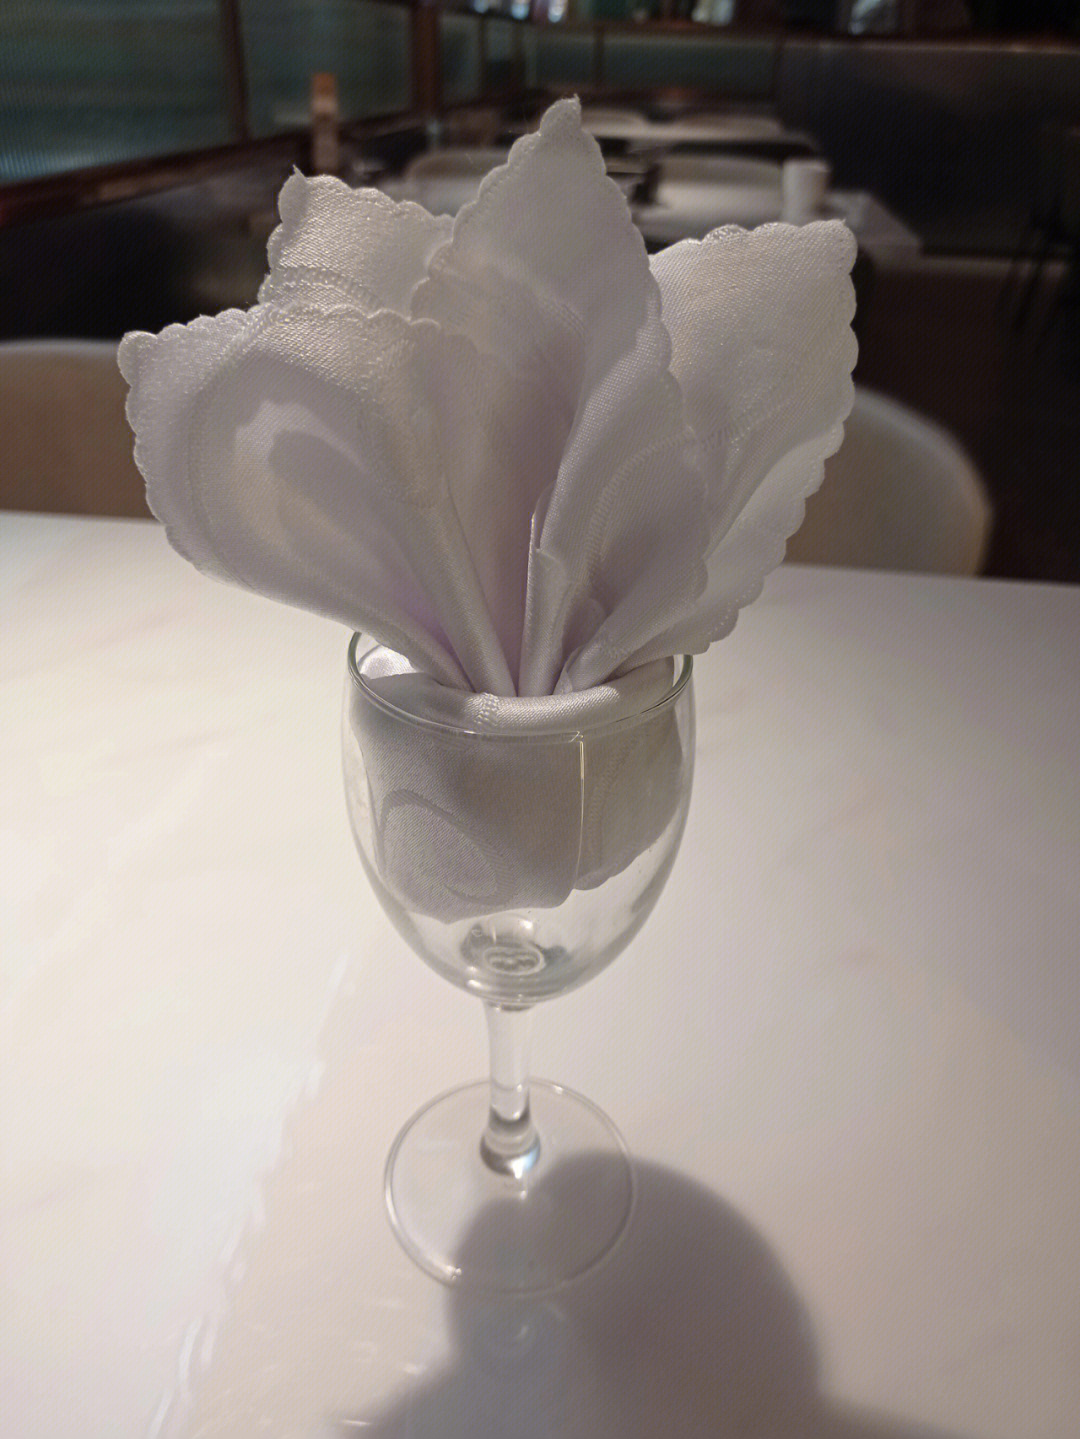 马蹄莲餐巾折花图片图片